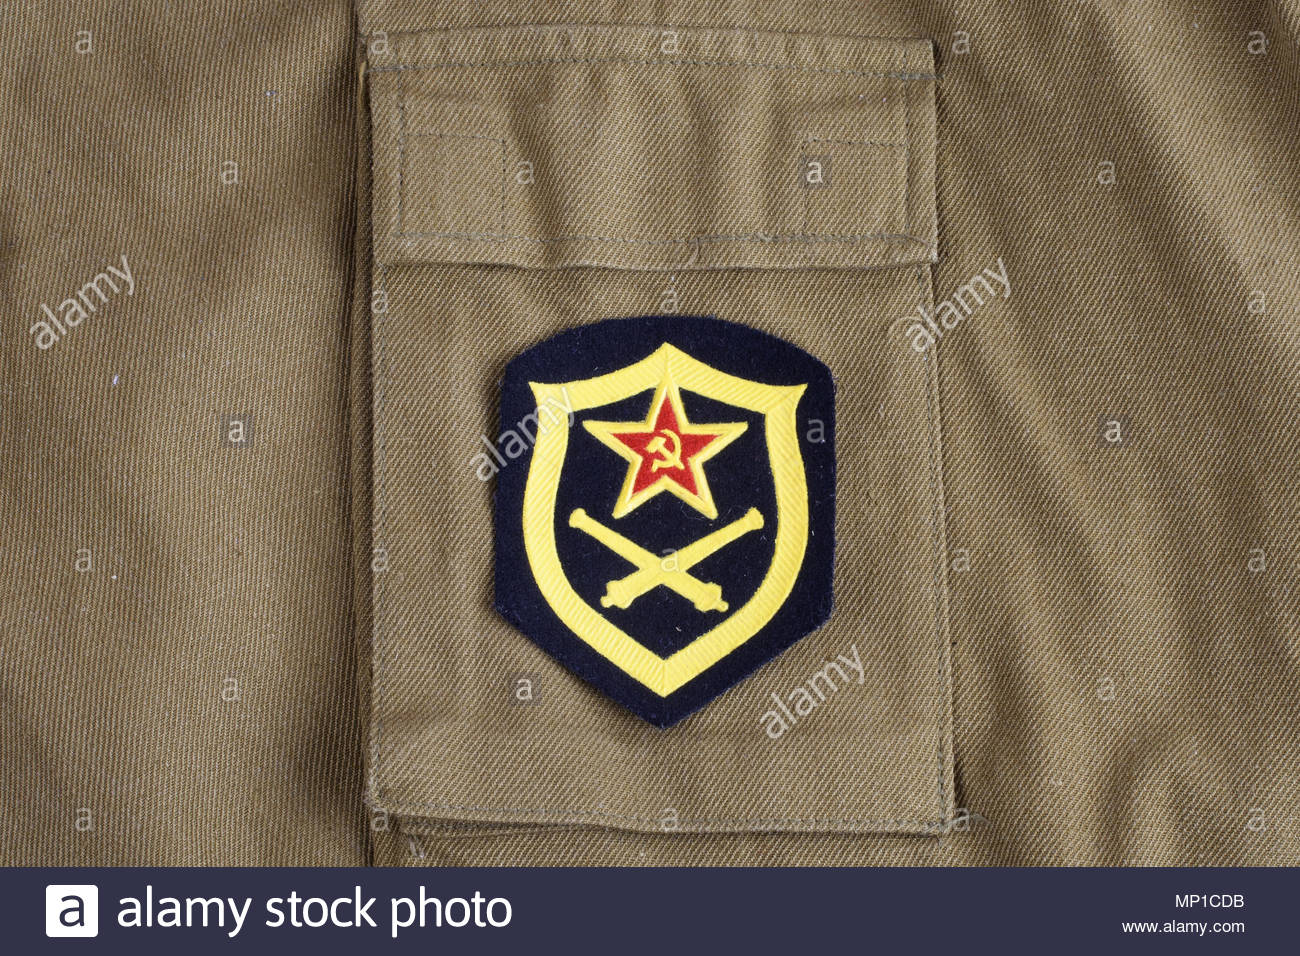 Soviet Army Artillery Shoulder Patch On Khaki Uniform Background